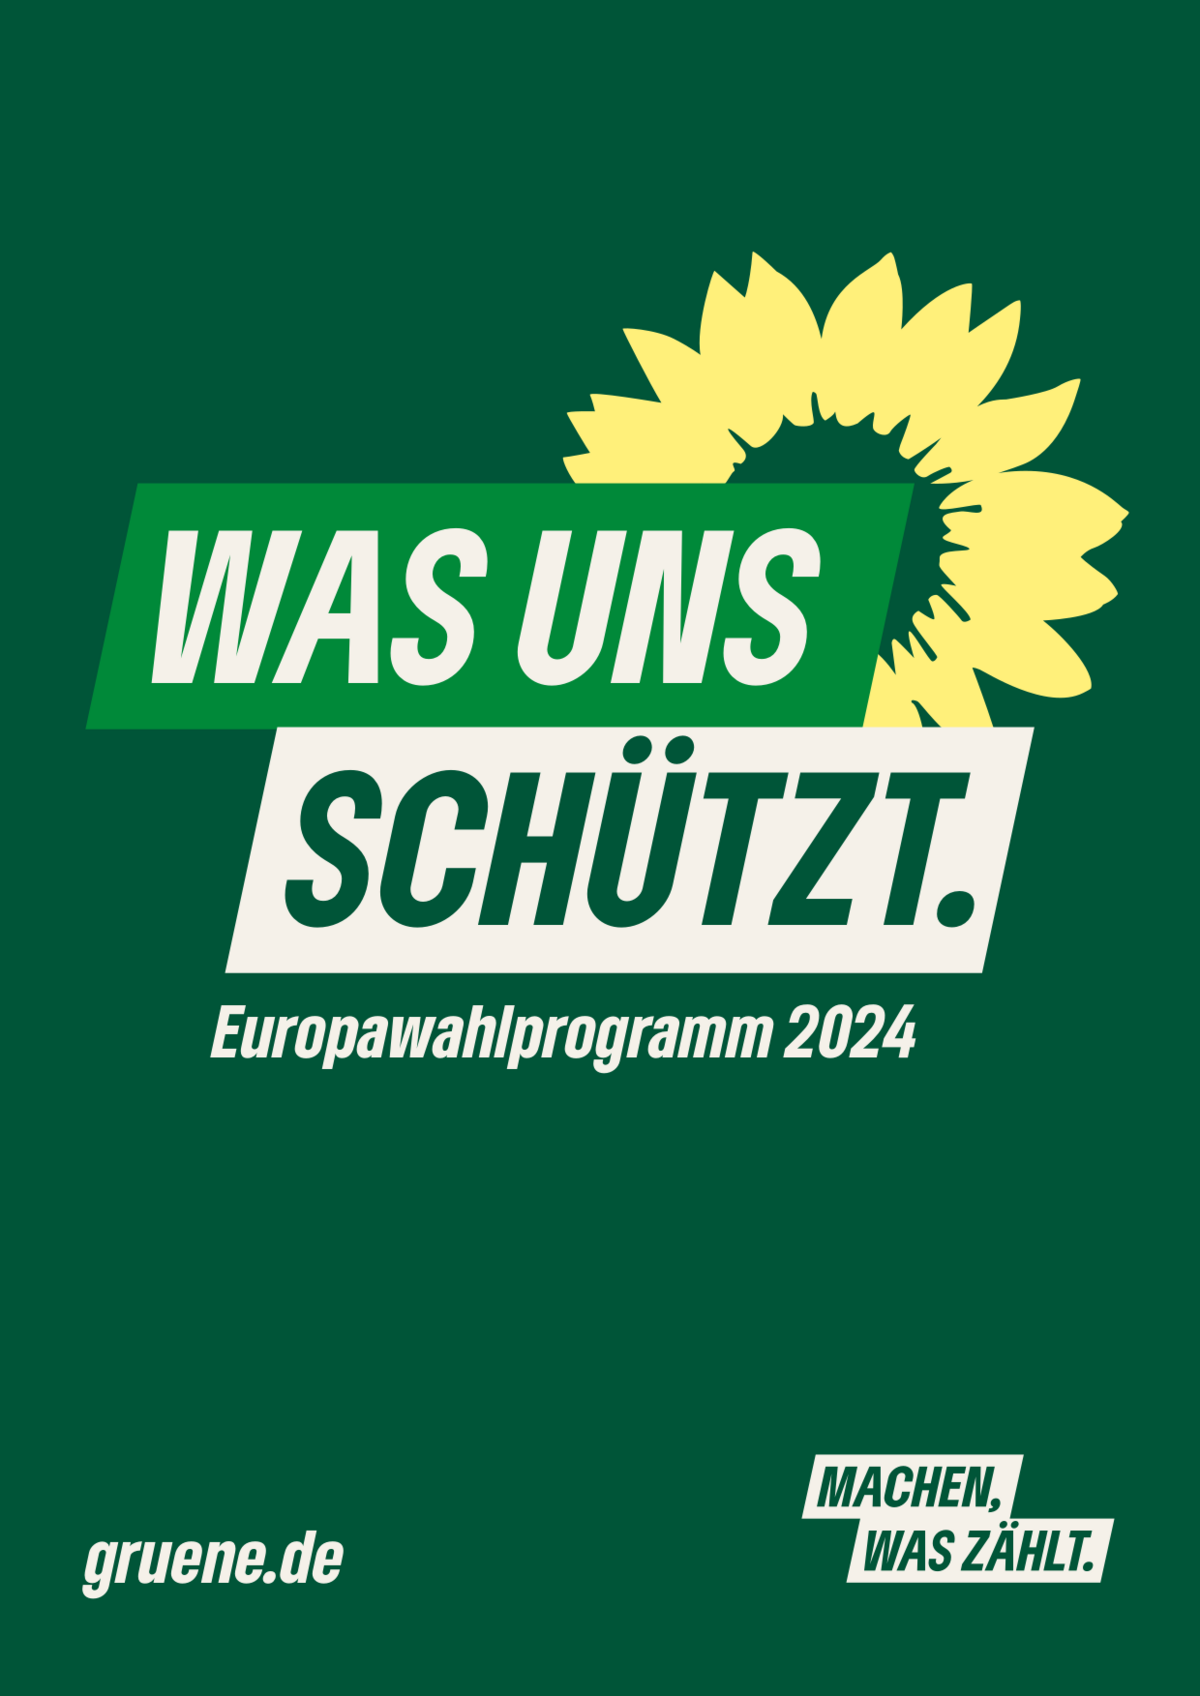 Eine Grafik mit einem grünen Hintergrund. Große Aufschrift "Was uns schützt. Europawahlprogramm 2024" mit einer gelben, stilisierten Sonnenblume. Links unten die Aufschrift "gruene.de", rechts unten "Machen, was zählt"